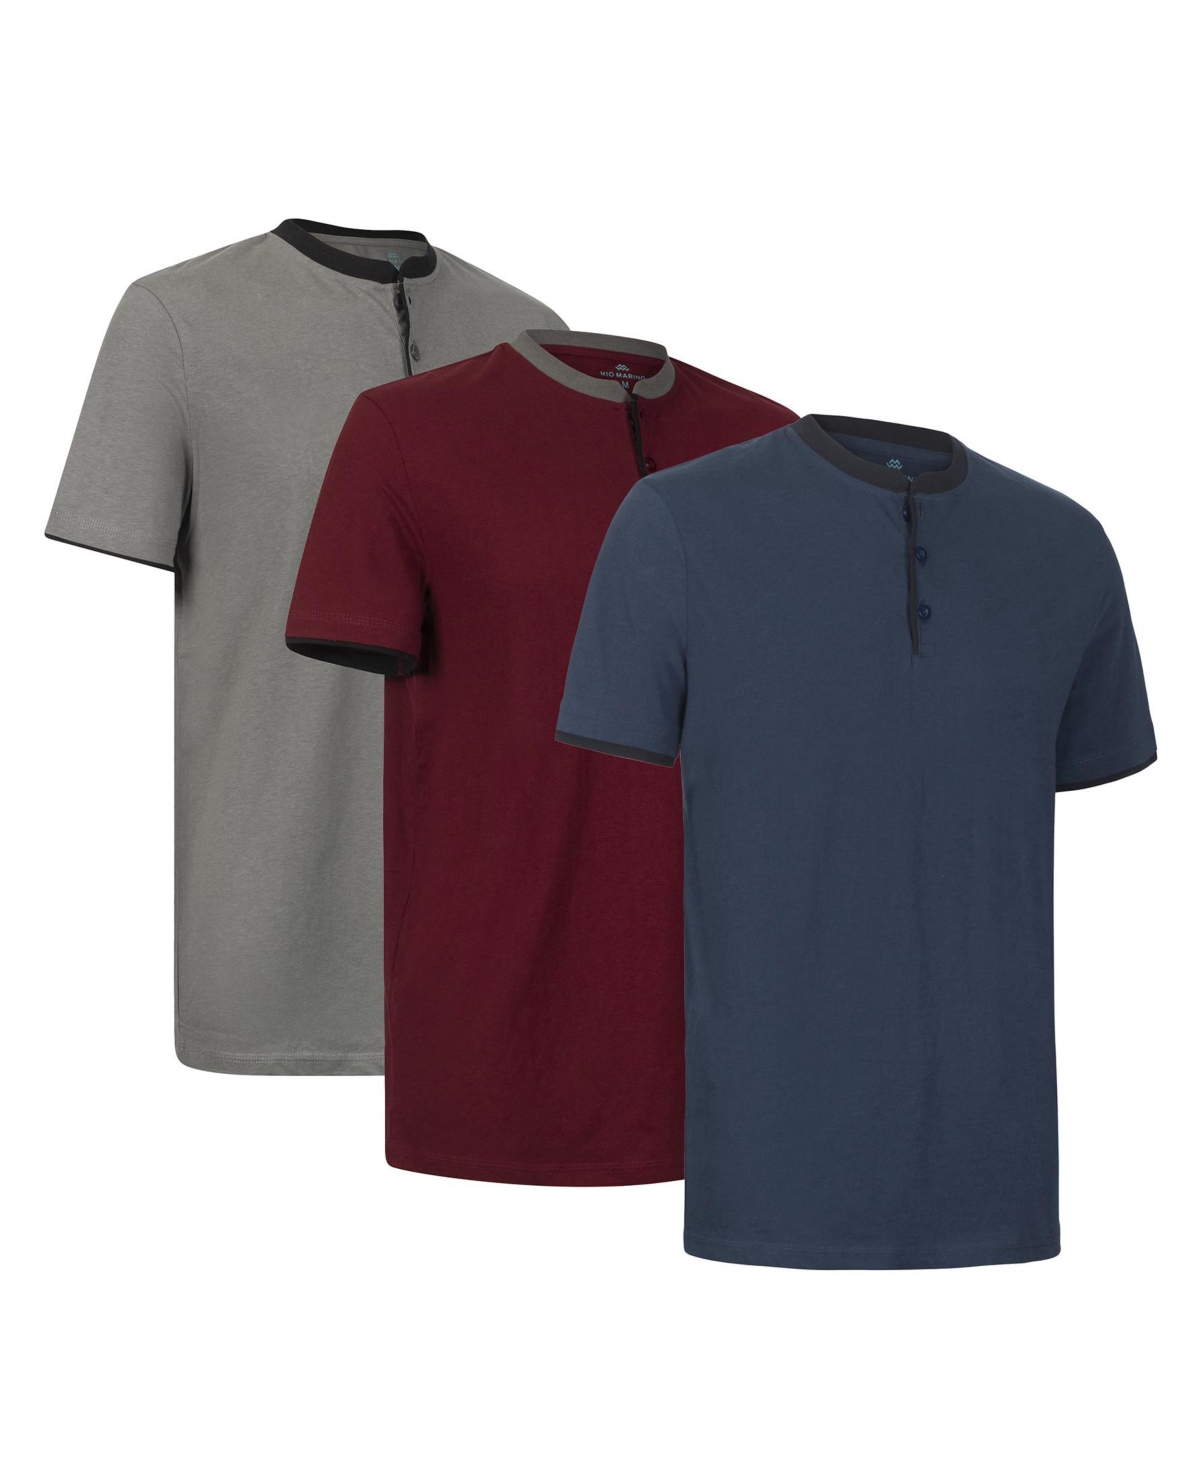 Men's Short Sleeve Henley T-Shirt-3 Pack - Dark gray/burgundy/navy